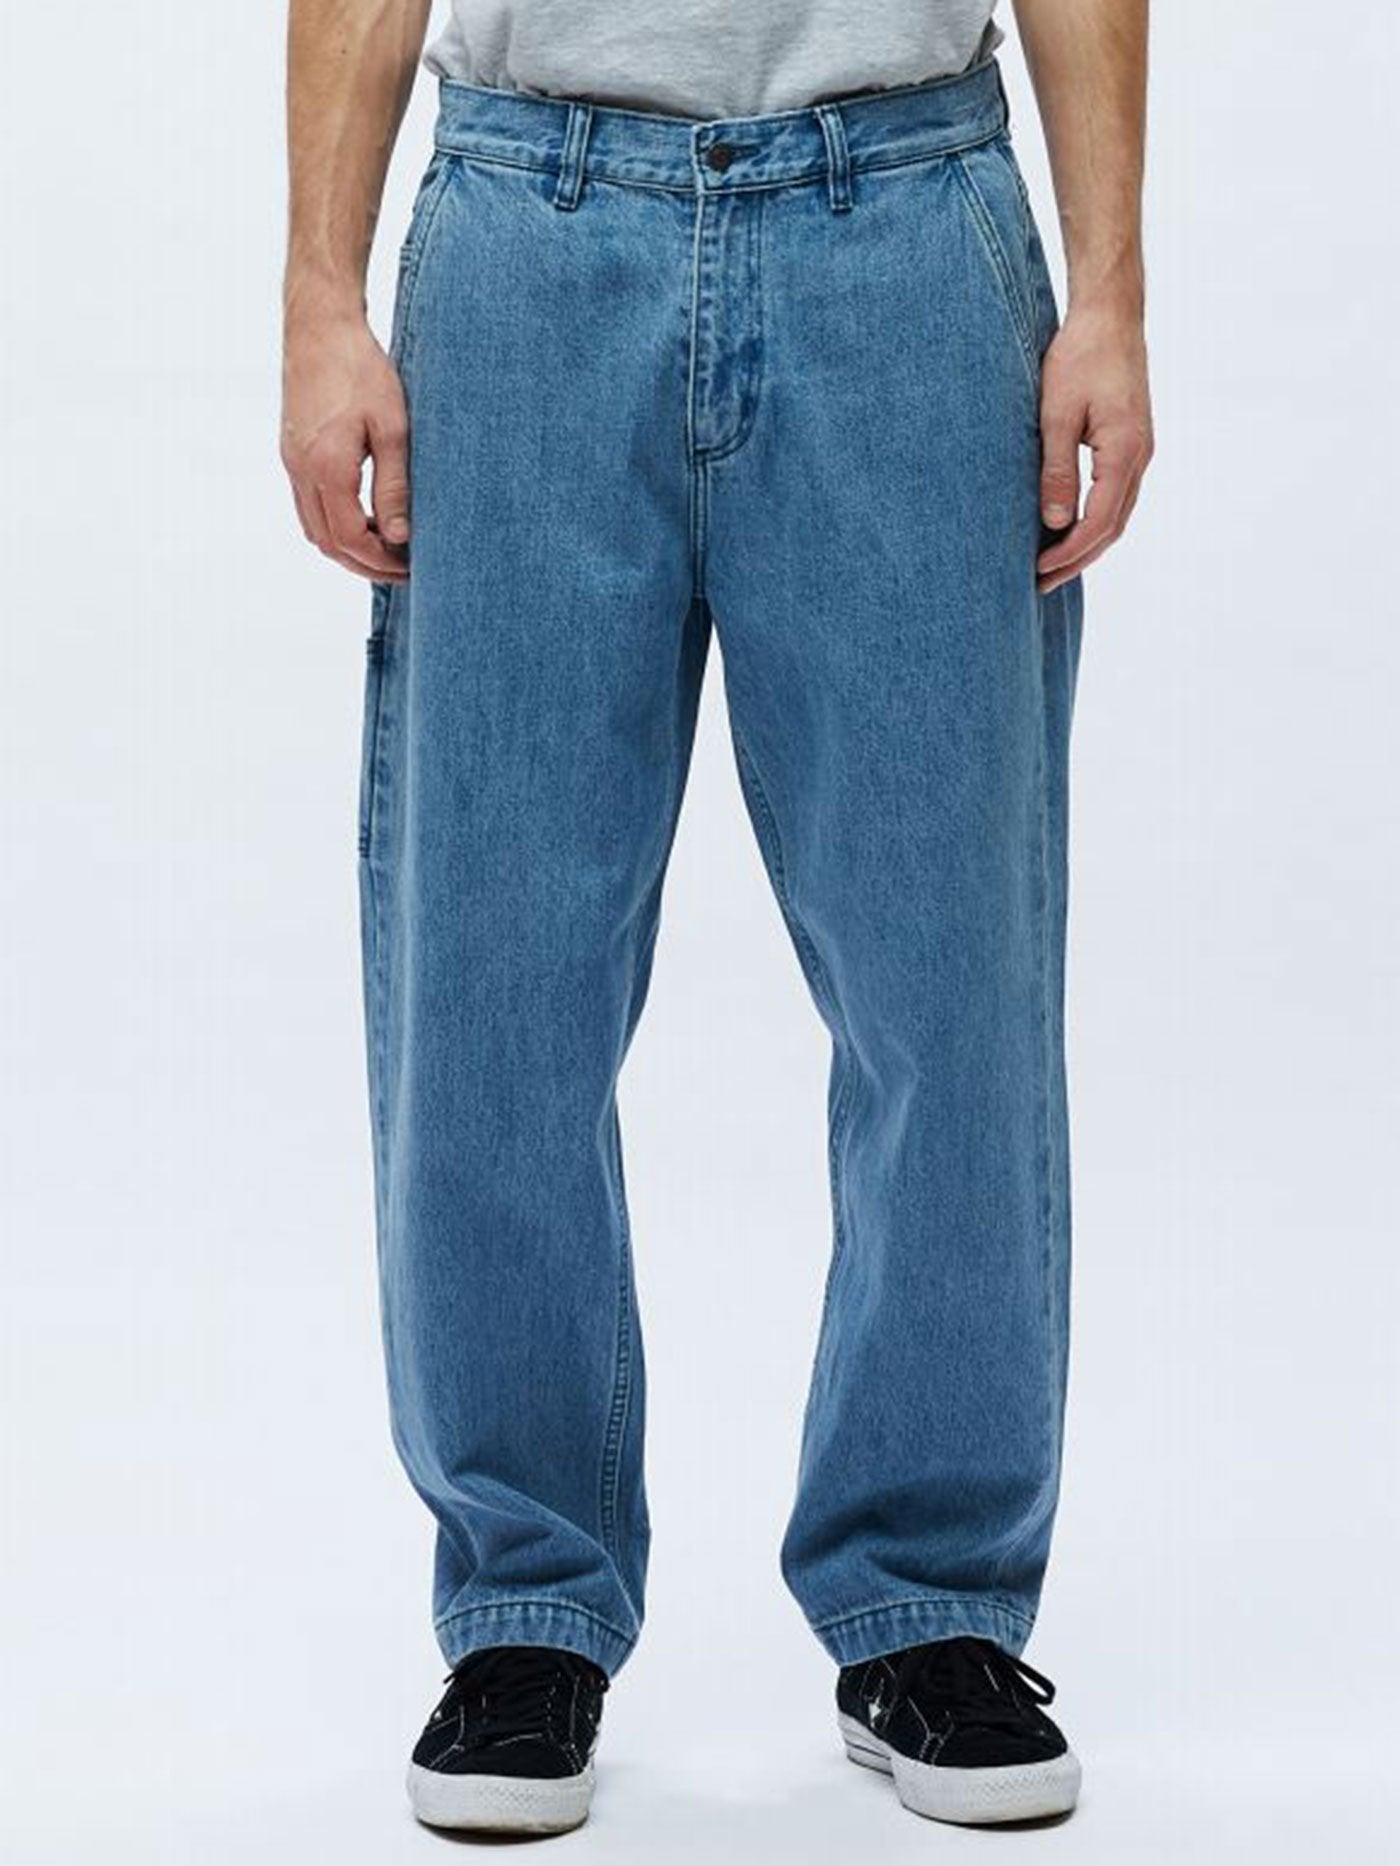 Men's Jeans – Empire Online Store